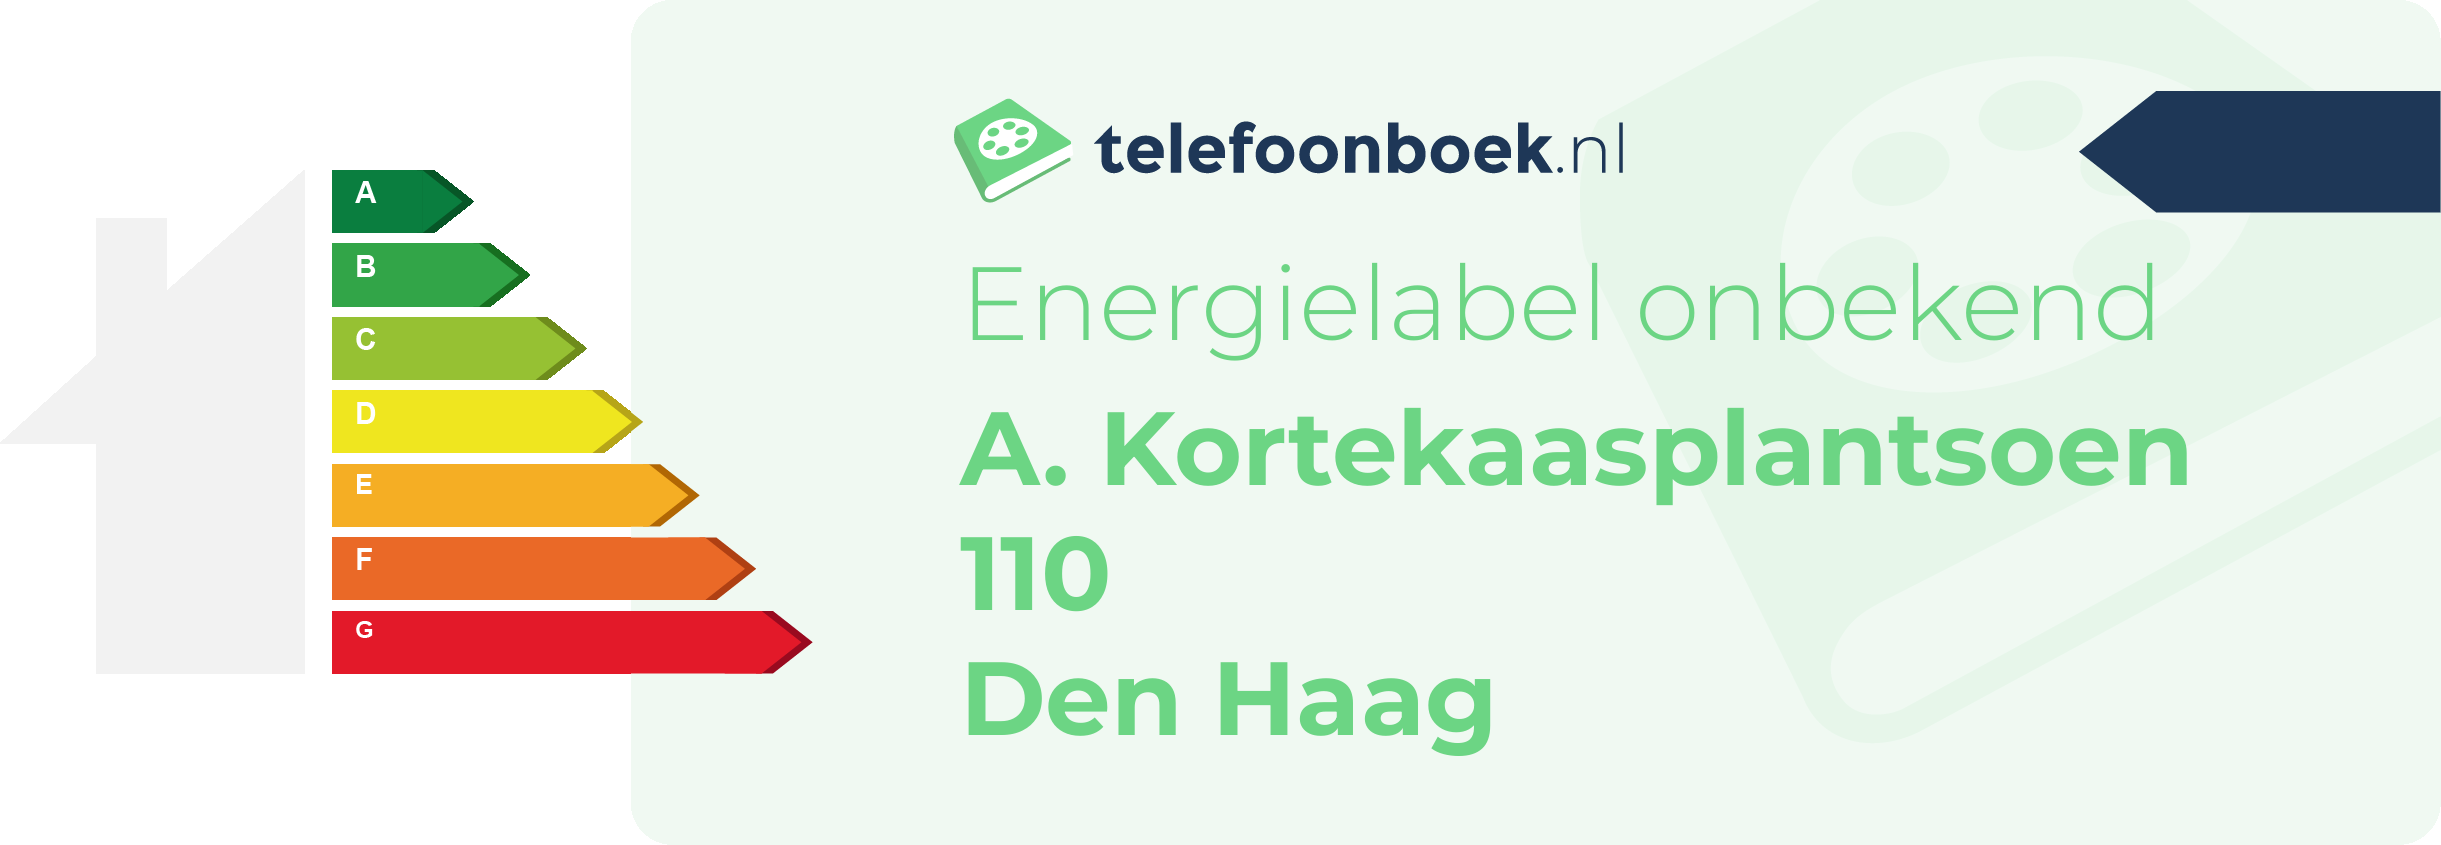 Energielabel A. Kortekaasplantsoen 110 Den Haag